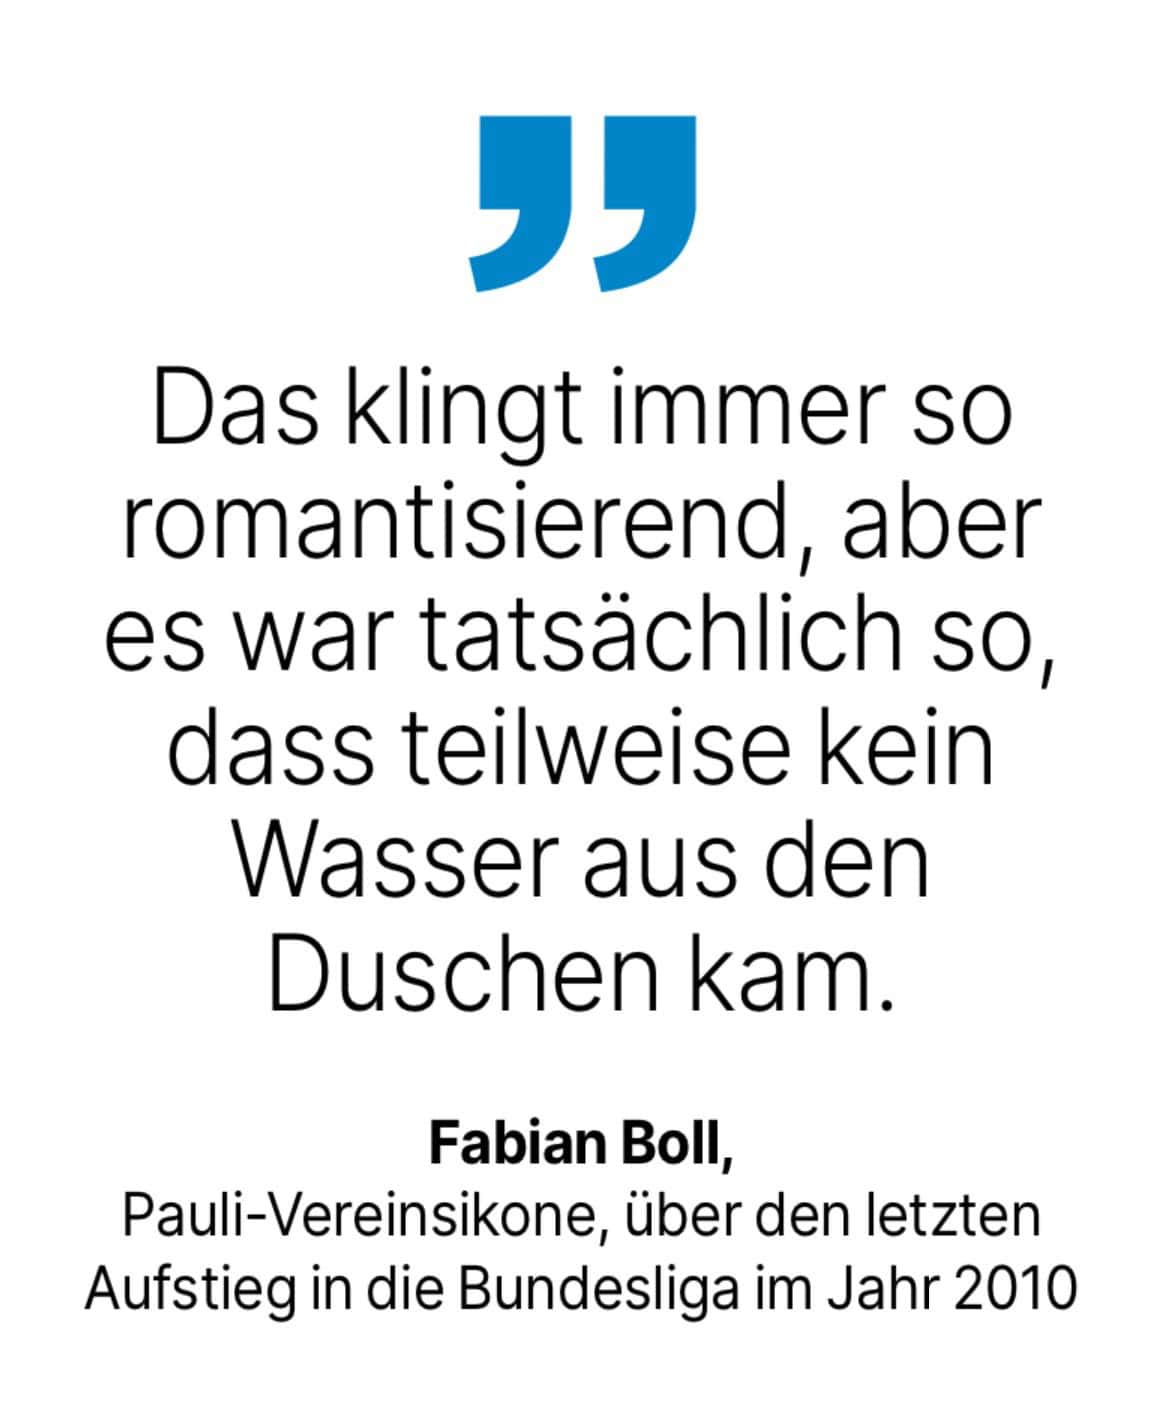 Fabian Boll, Pauli-Vereinsikone, über den letzten Aufstieg in die Bundesliga im Jahr 2010: Das klingt immer so romantisierend, aber es war tatsächlich so, dass teilweise kein Wasser aus den Duschen kam.